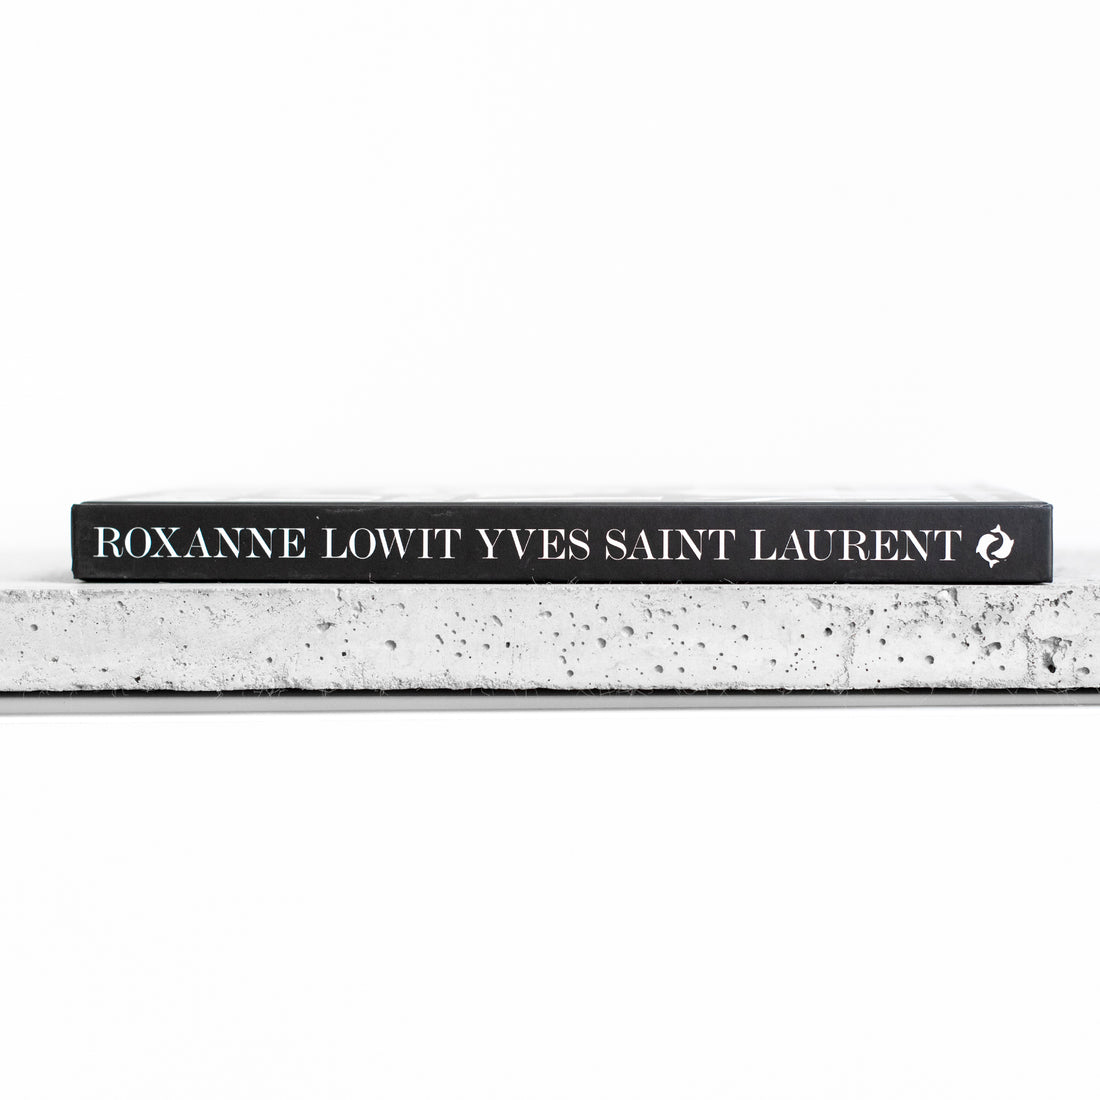 Yves Saint Laurent Photographs - Roxanne Lowit